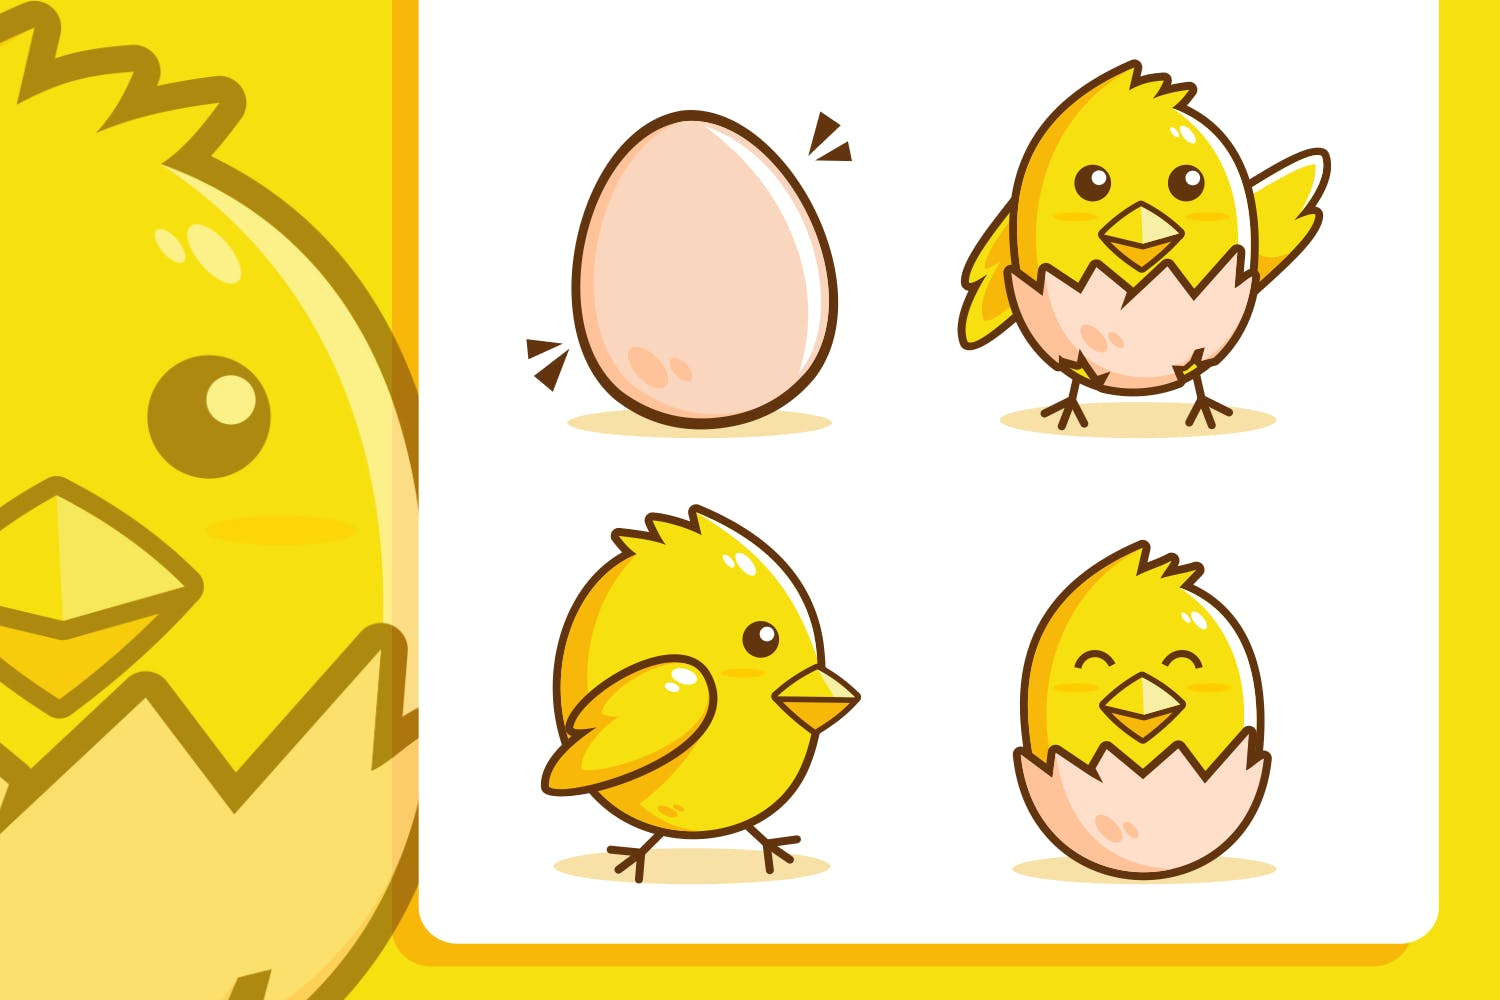 可爱的小鸡孵化卡通矢量插画素材集合 cute Chick hatch cartoon collection